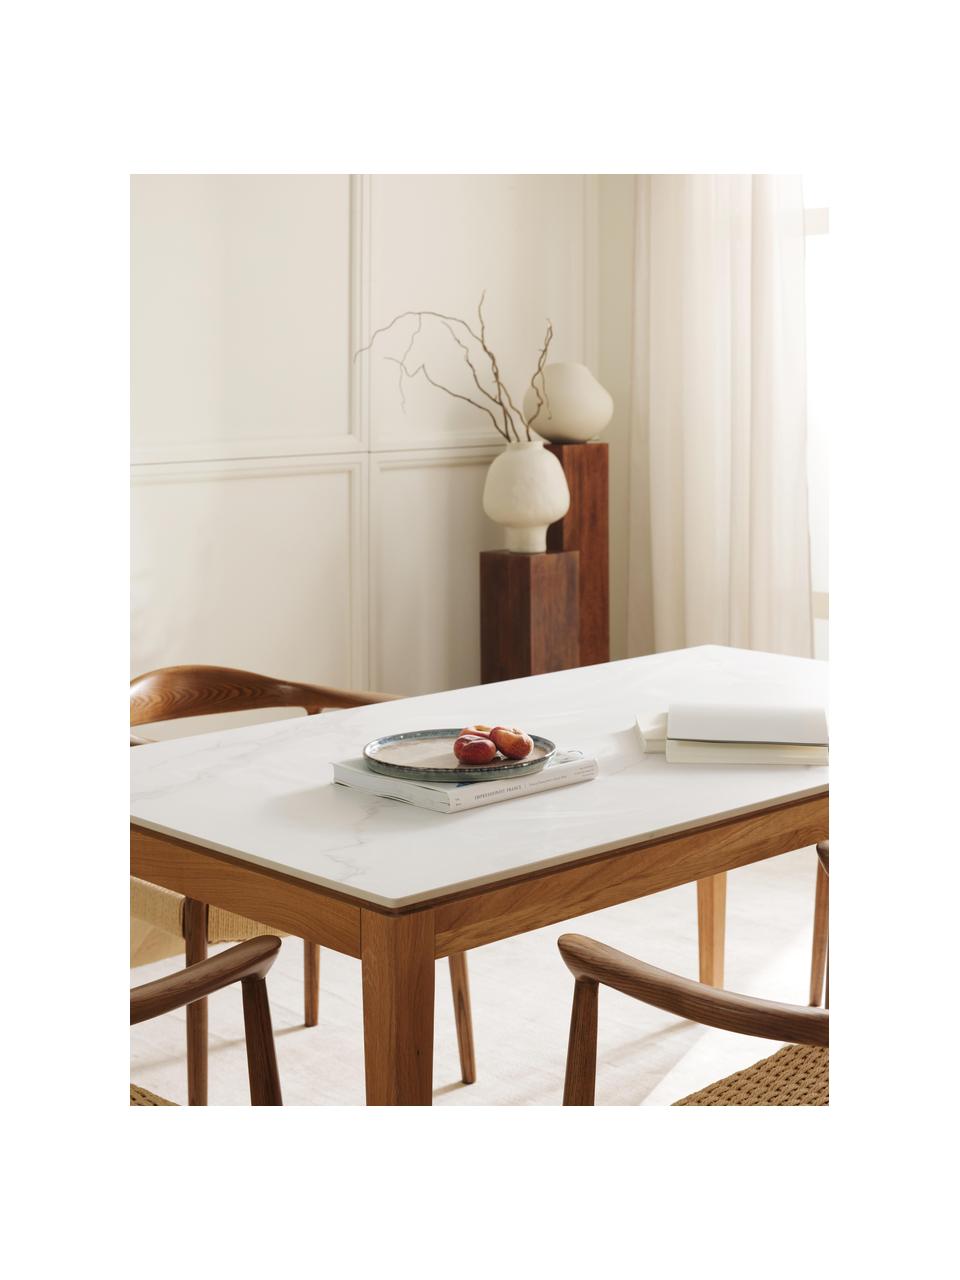 Esstisch Jackson mit Marmor-Optik, verschiedene Grössen, Tischplatte: Keramikstein in Marmor-Op, Eichenholz, lackiert, B 180 x T 90 cm